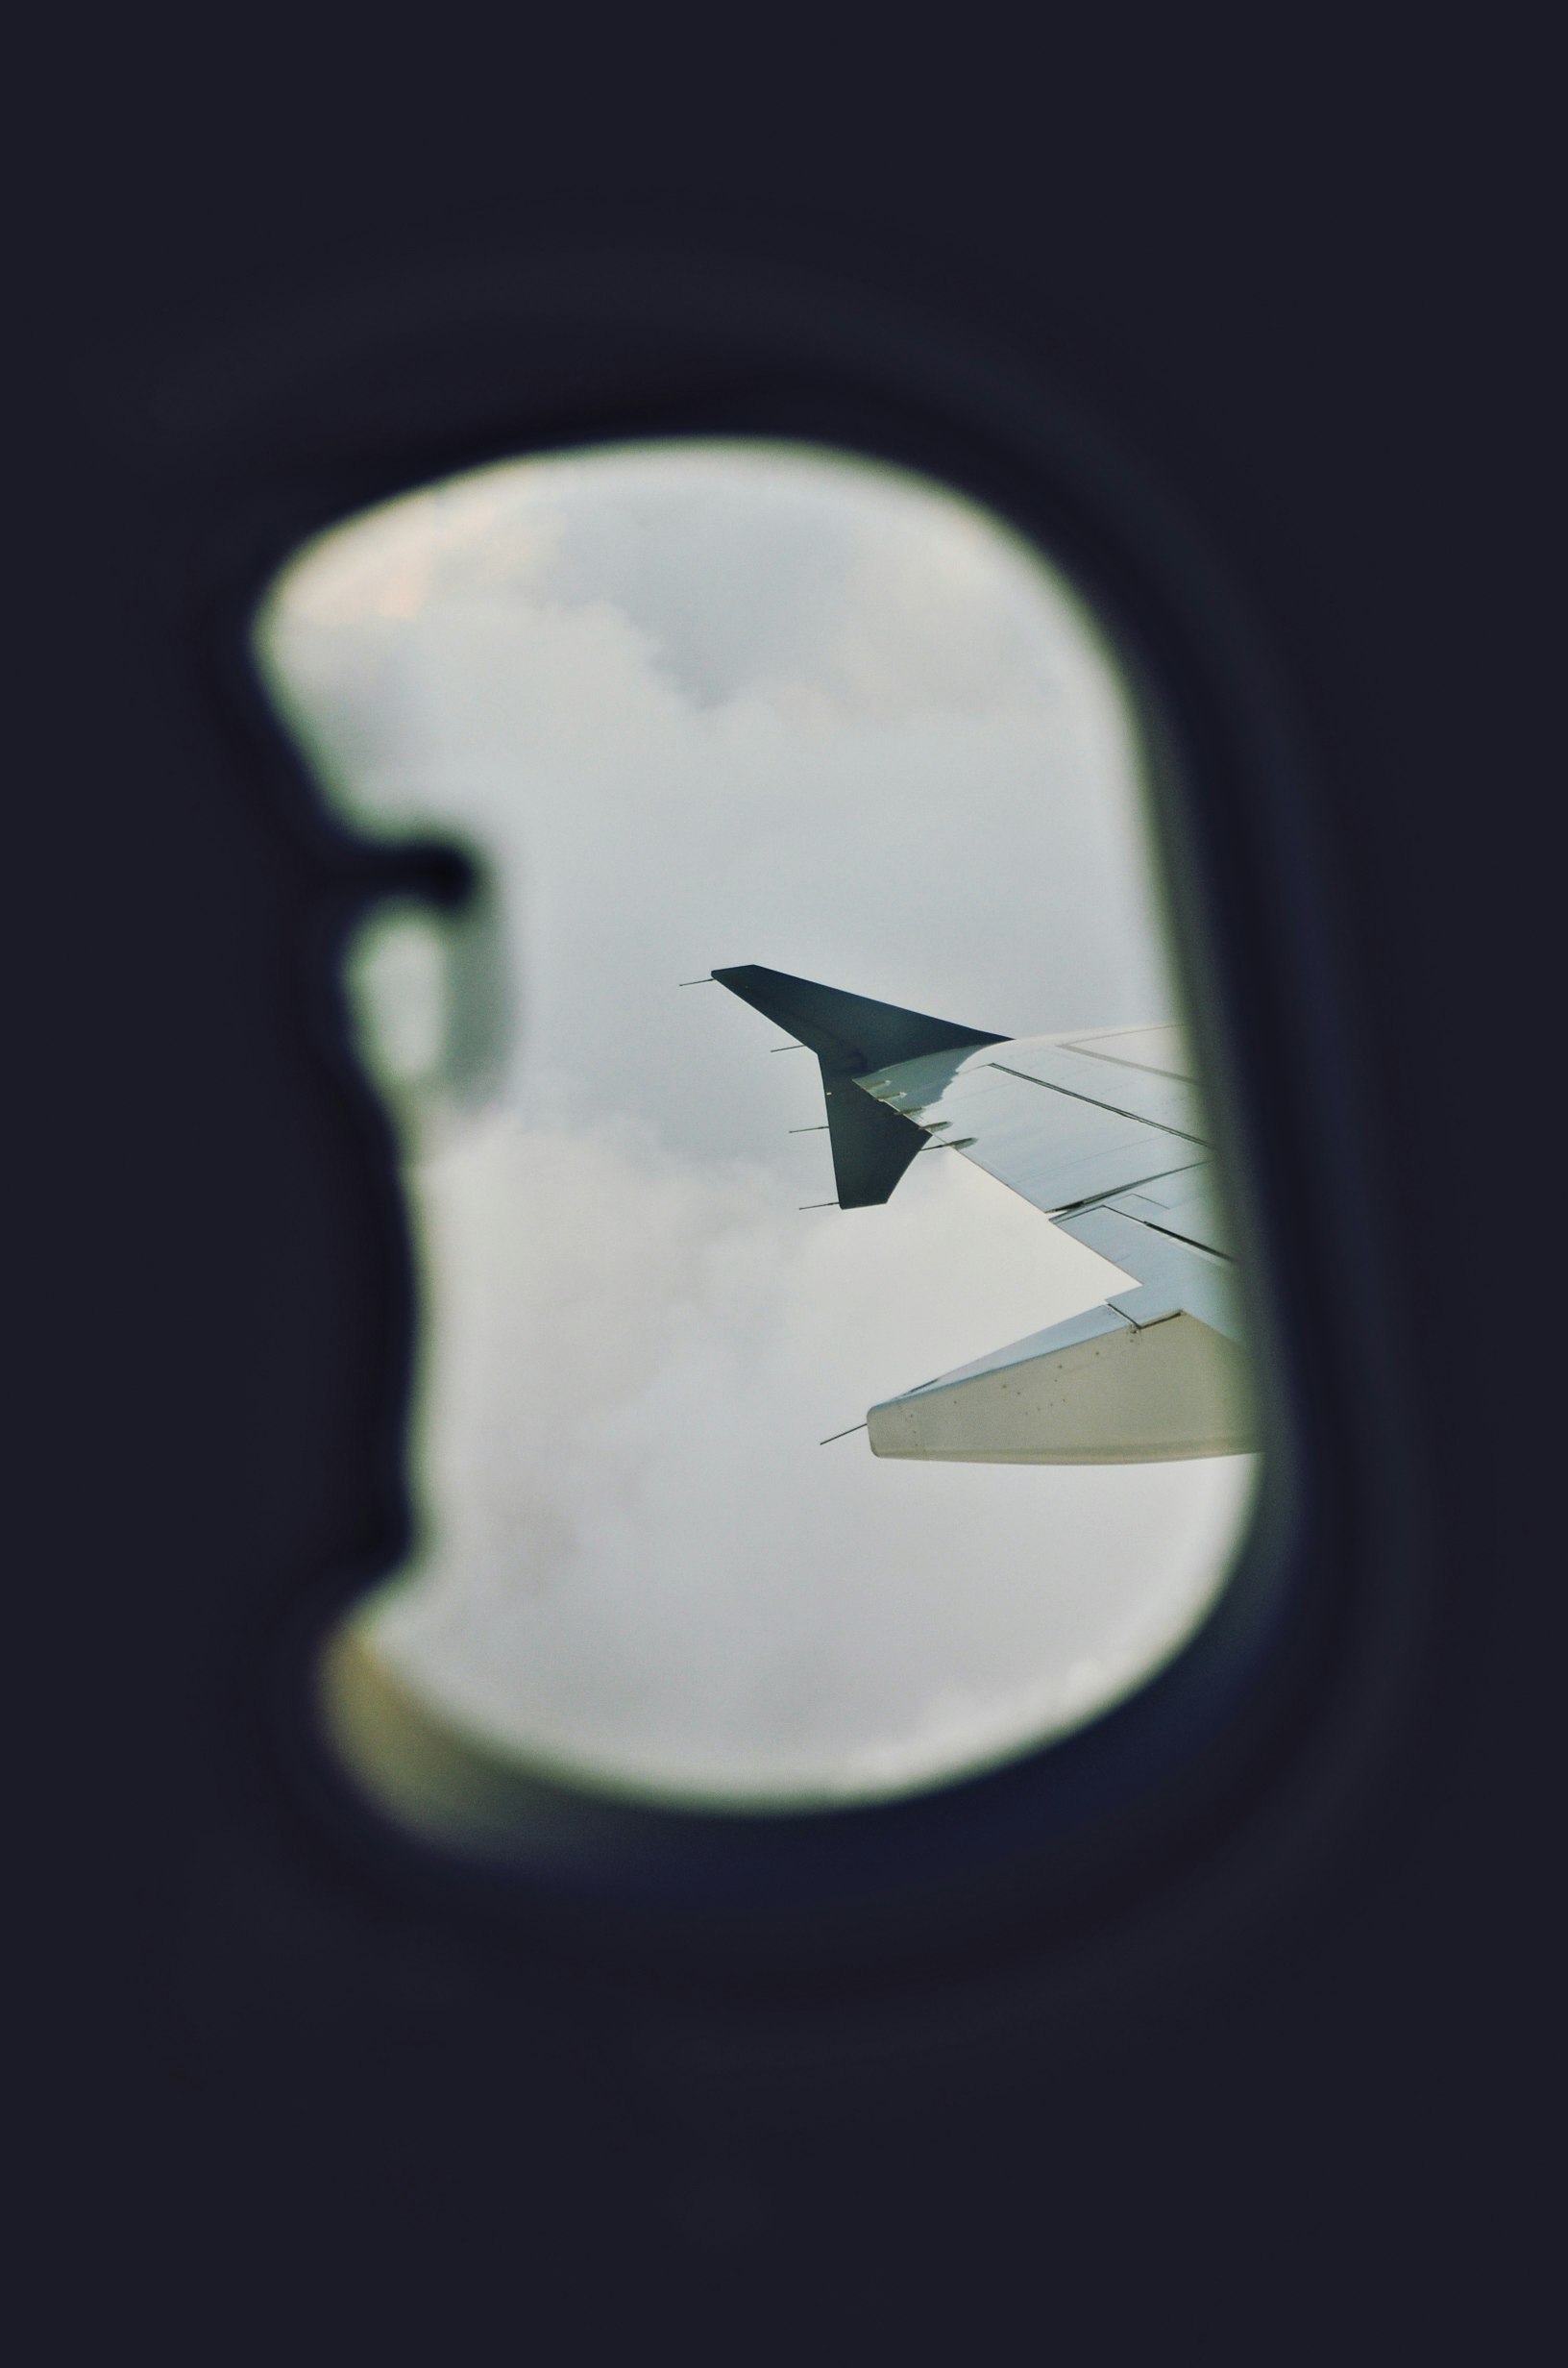 passenger view of airplane window